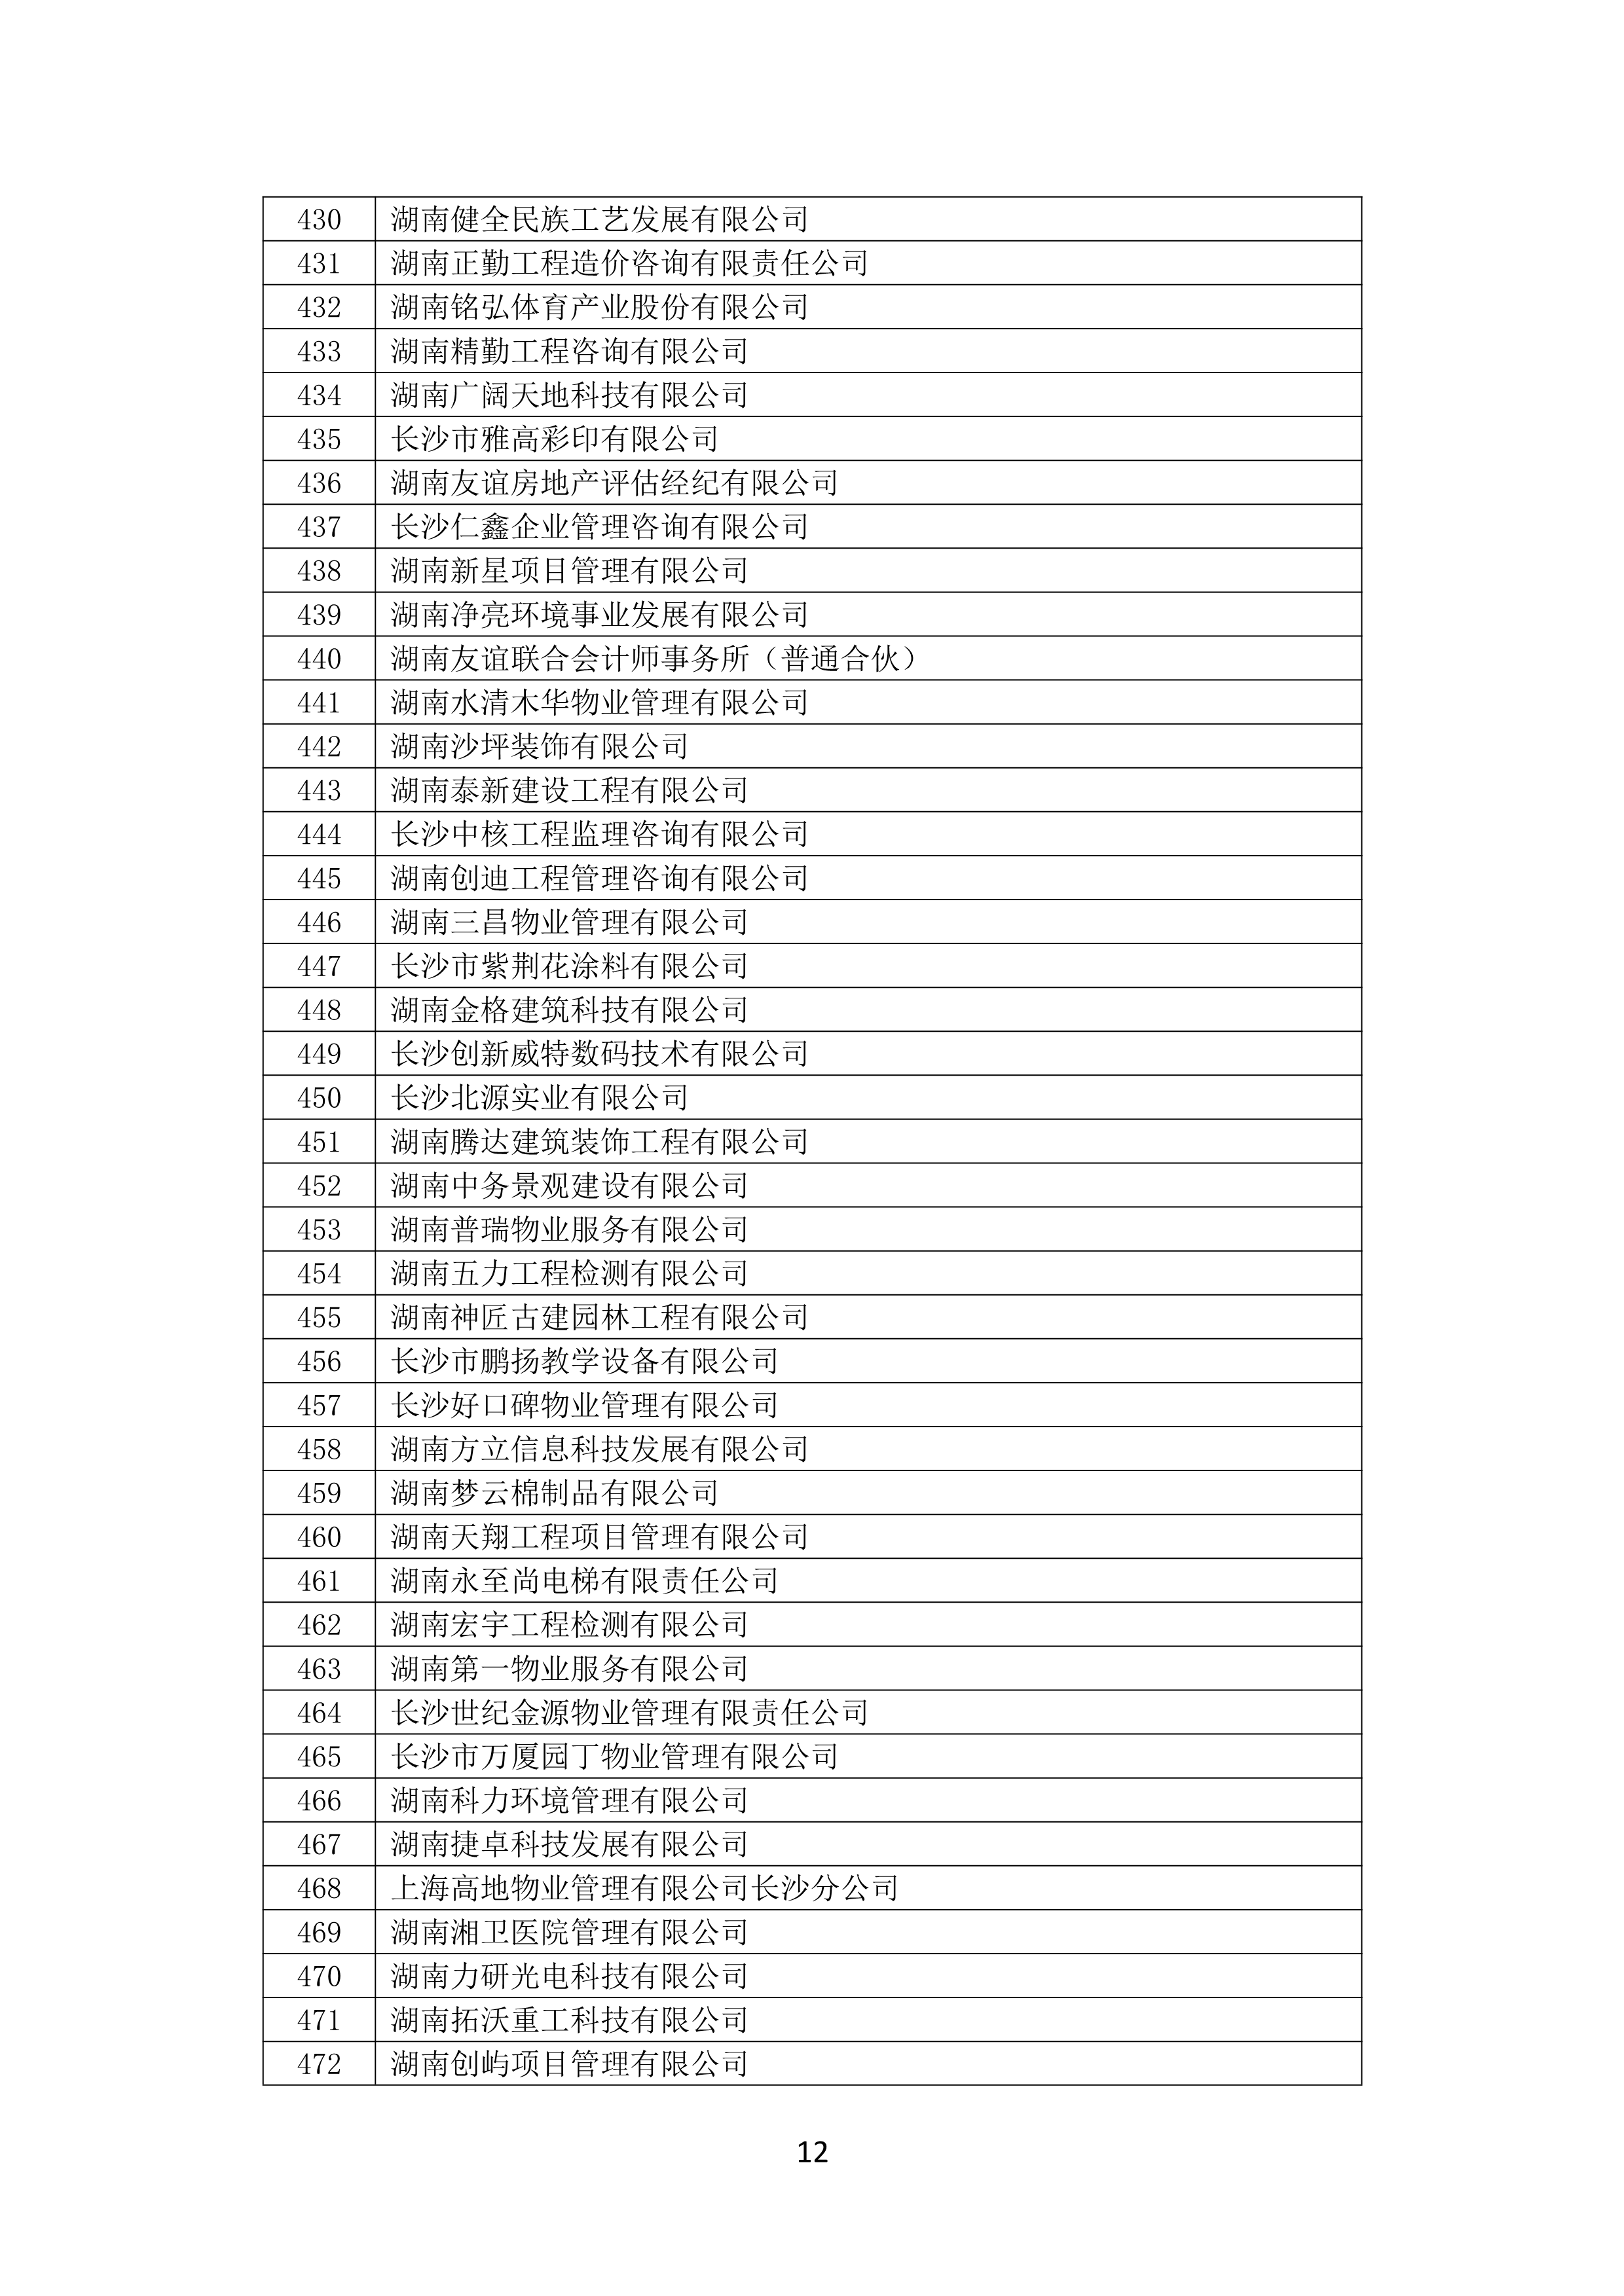 2021 年(nián)度湖南省守合同重信用企業名單_13.png